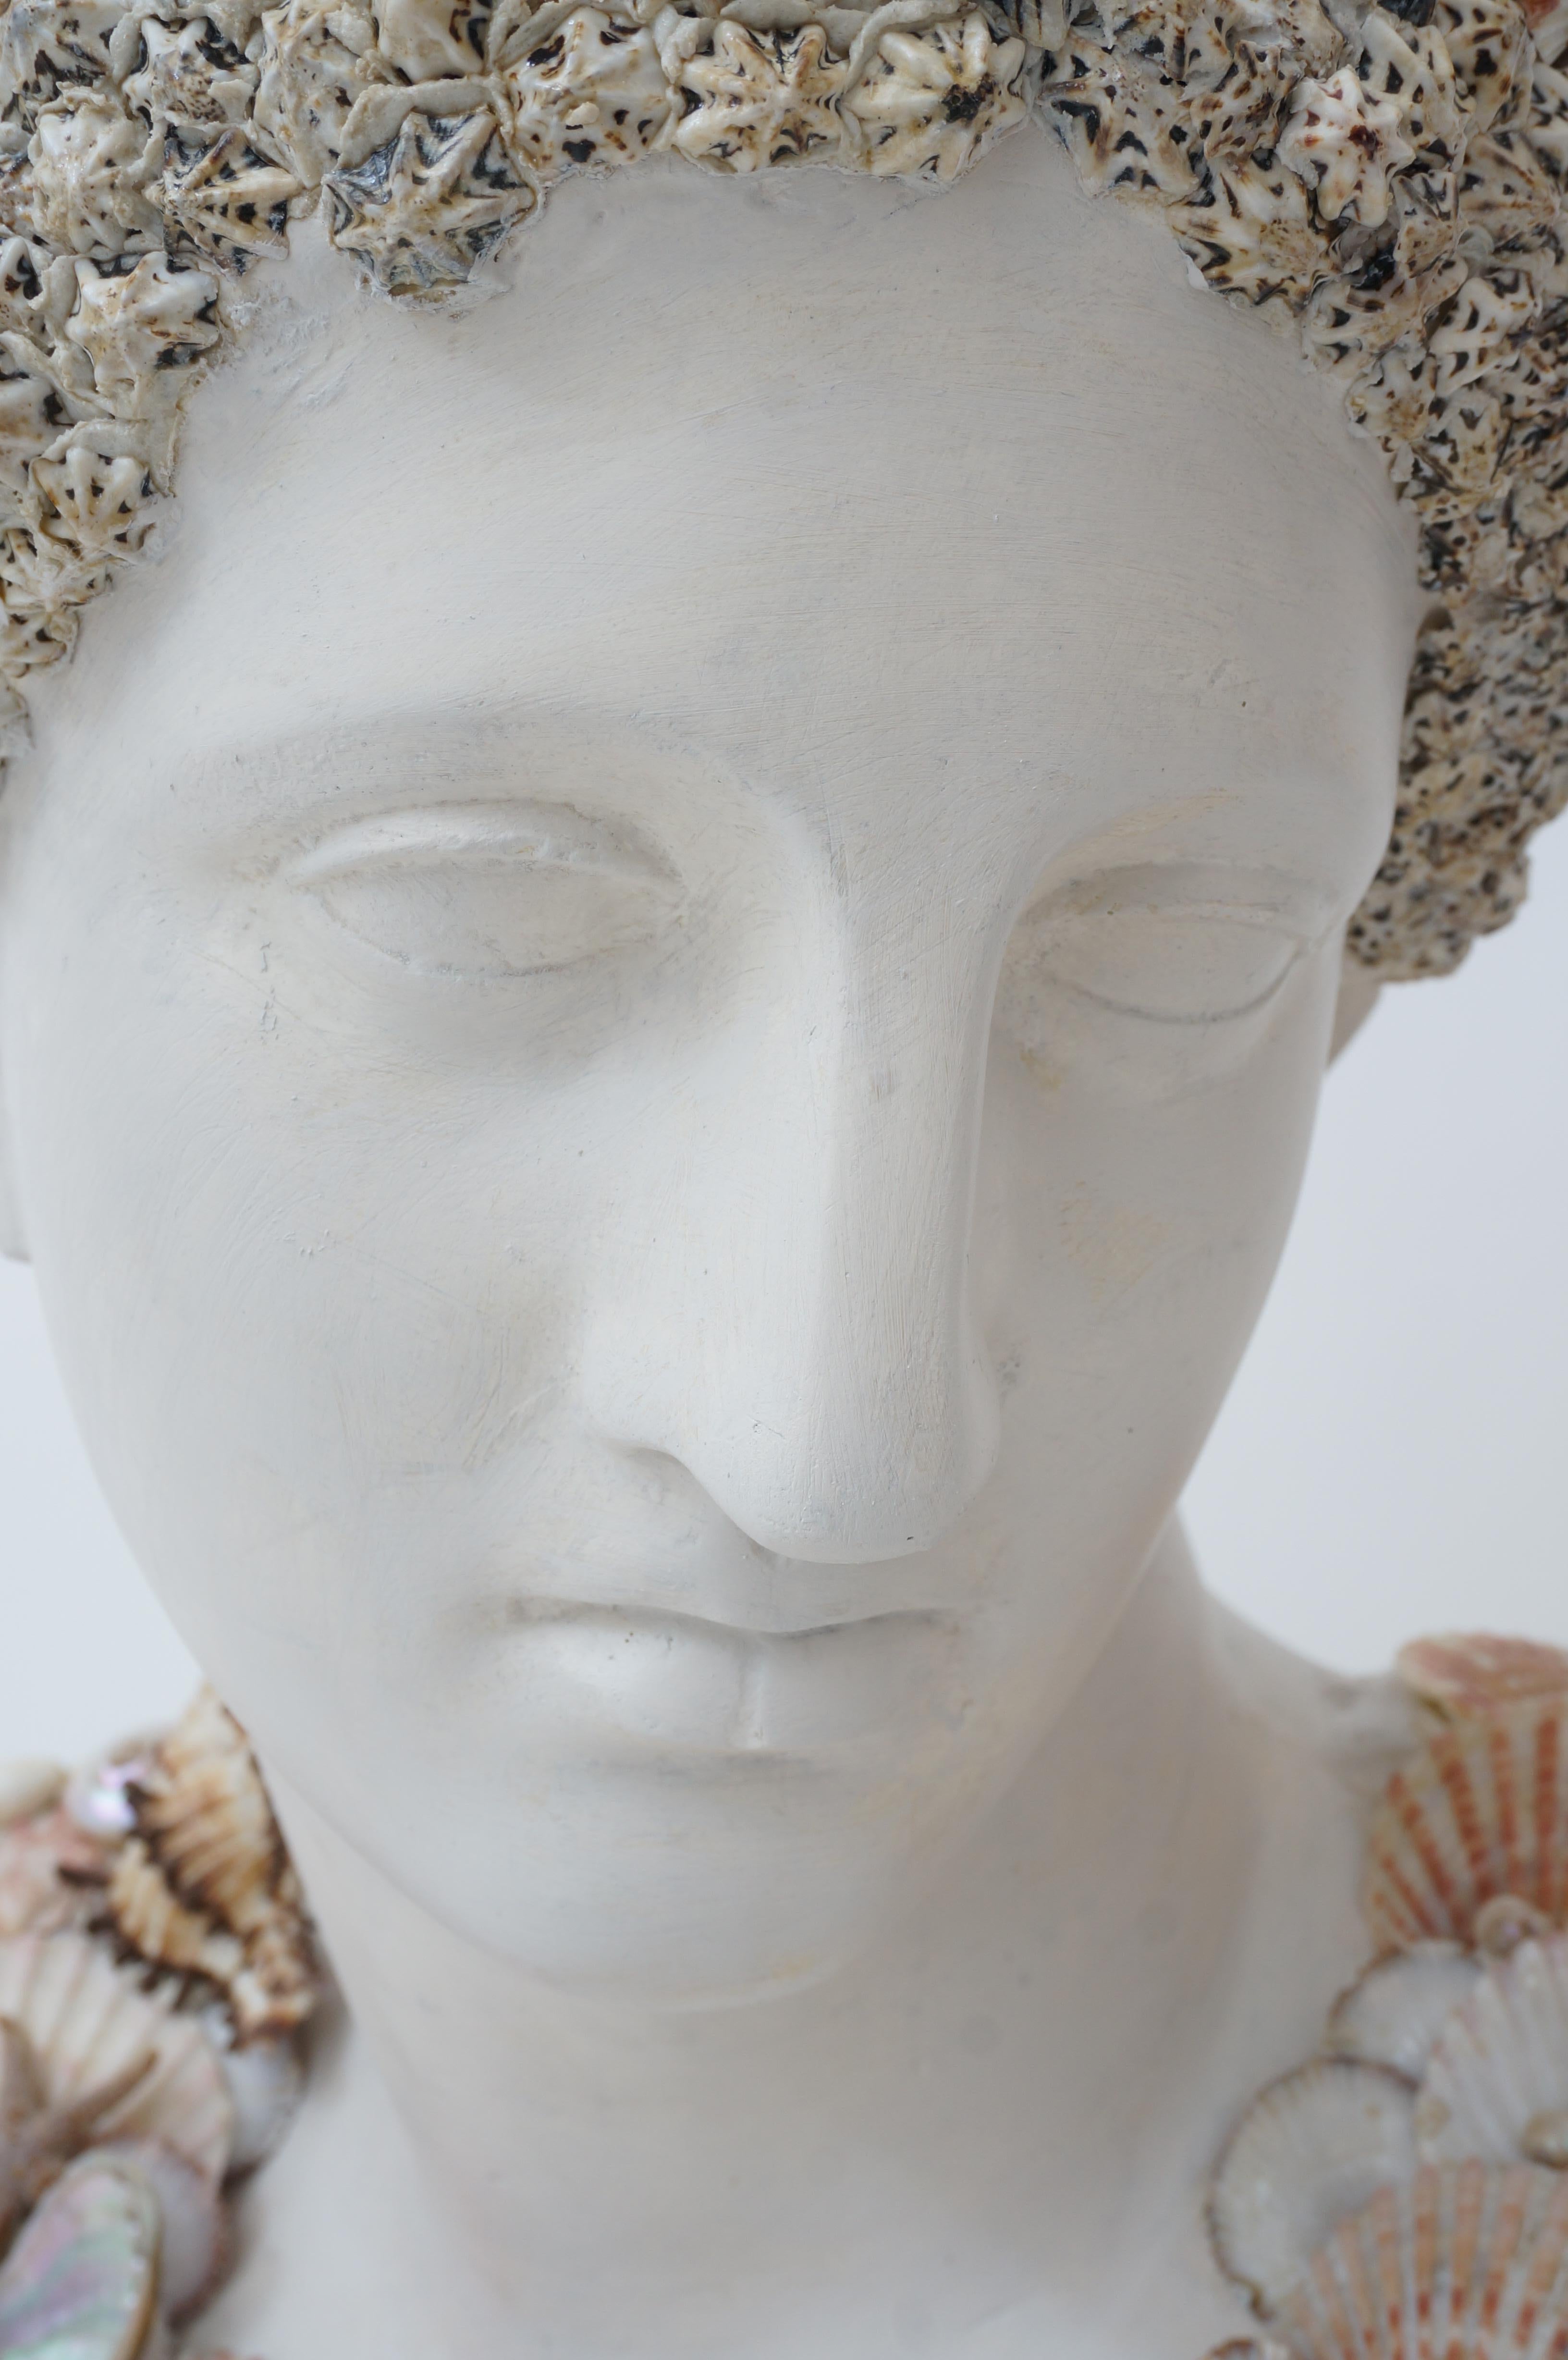 Diese schicke neoklassische Büste einer griechischen Göttin ist mit Muscheln verziert und entspricht ganz dem Geschmack der Stücke, die der ikonische Designer Tony Duquette begehrte. 

Der Sockel ist mit einer Marmorimitation bemalt und die